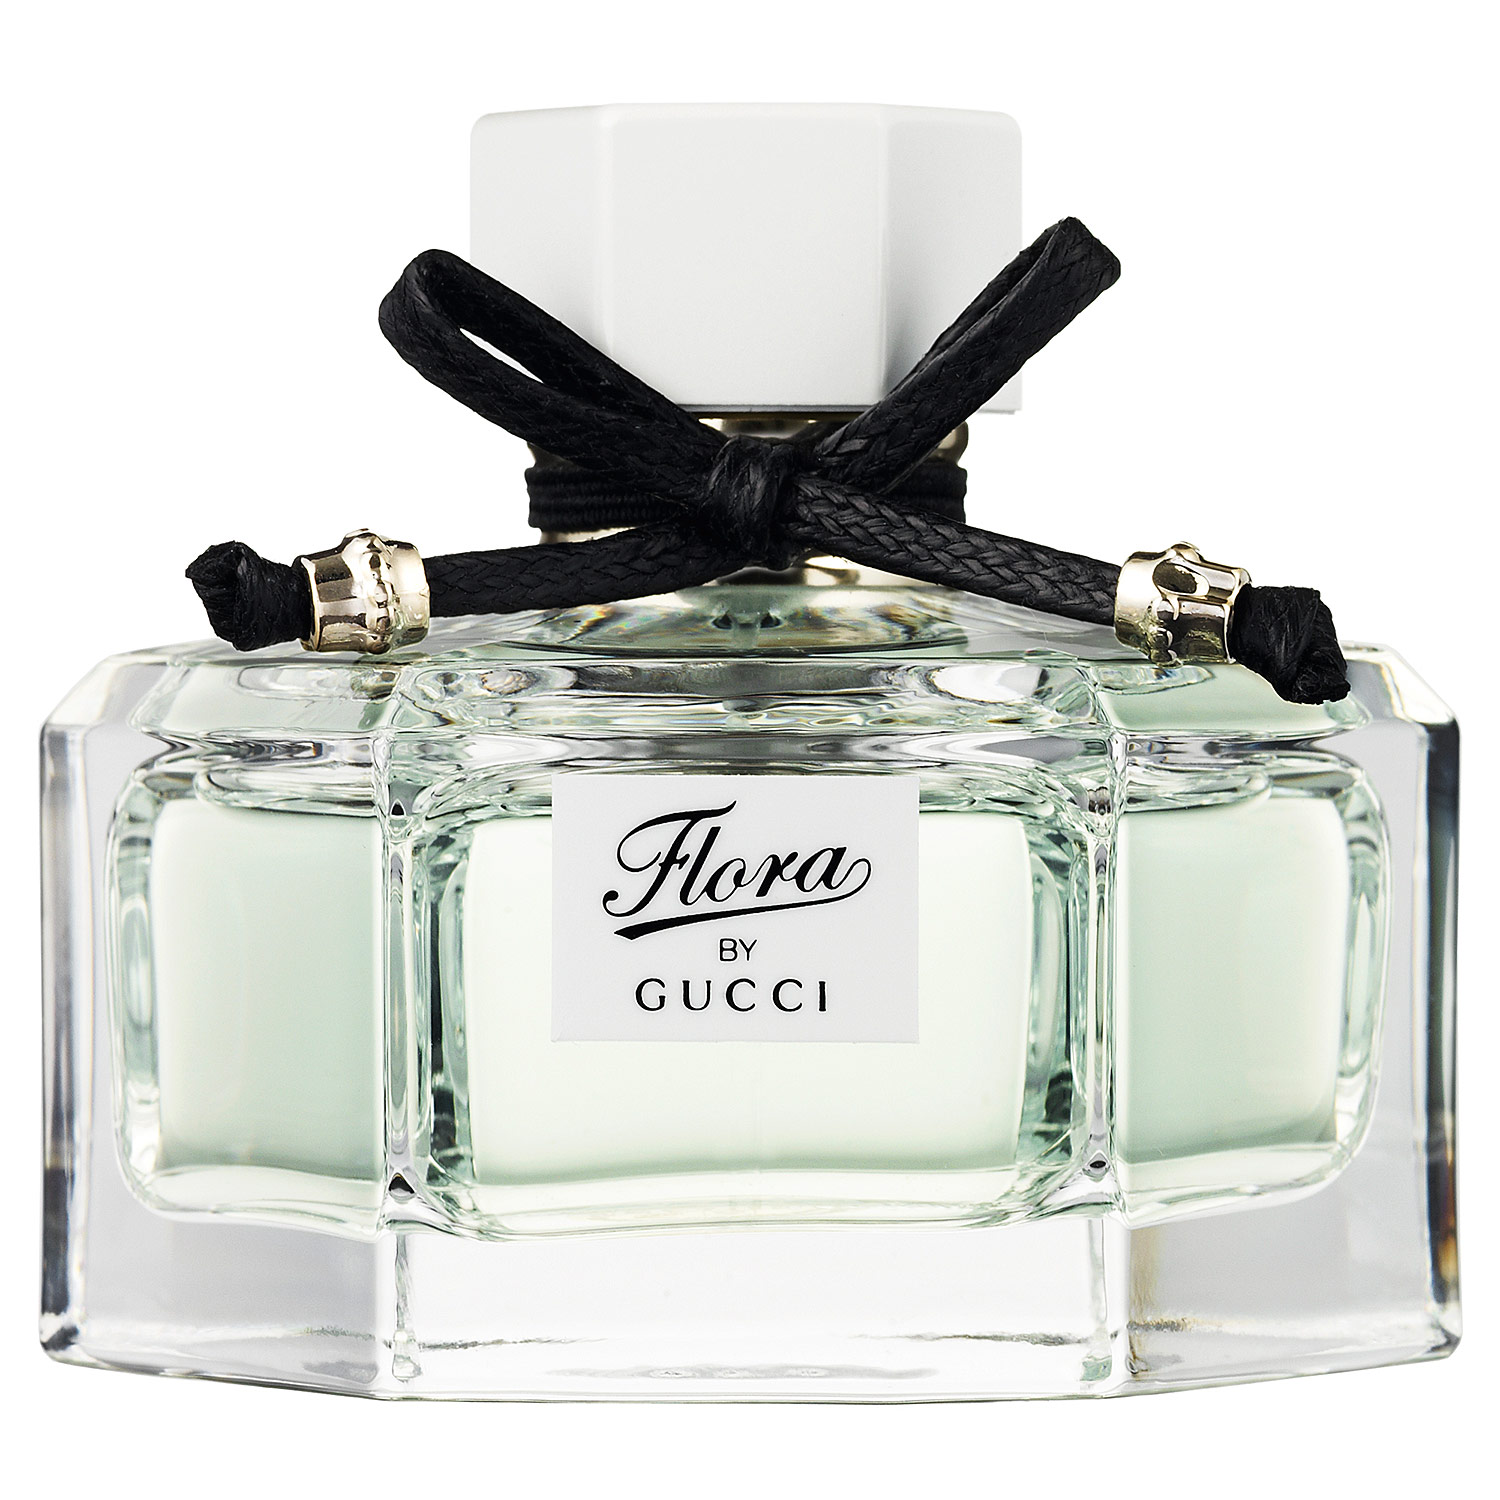 Flora by Gucci Eau Fraiche Gucci perfume - a fragrance for women 2011